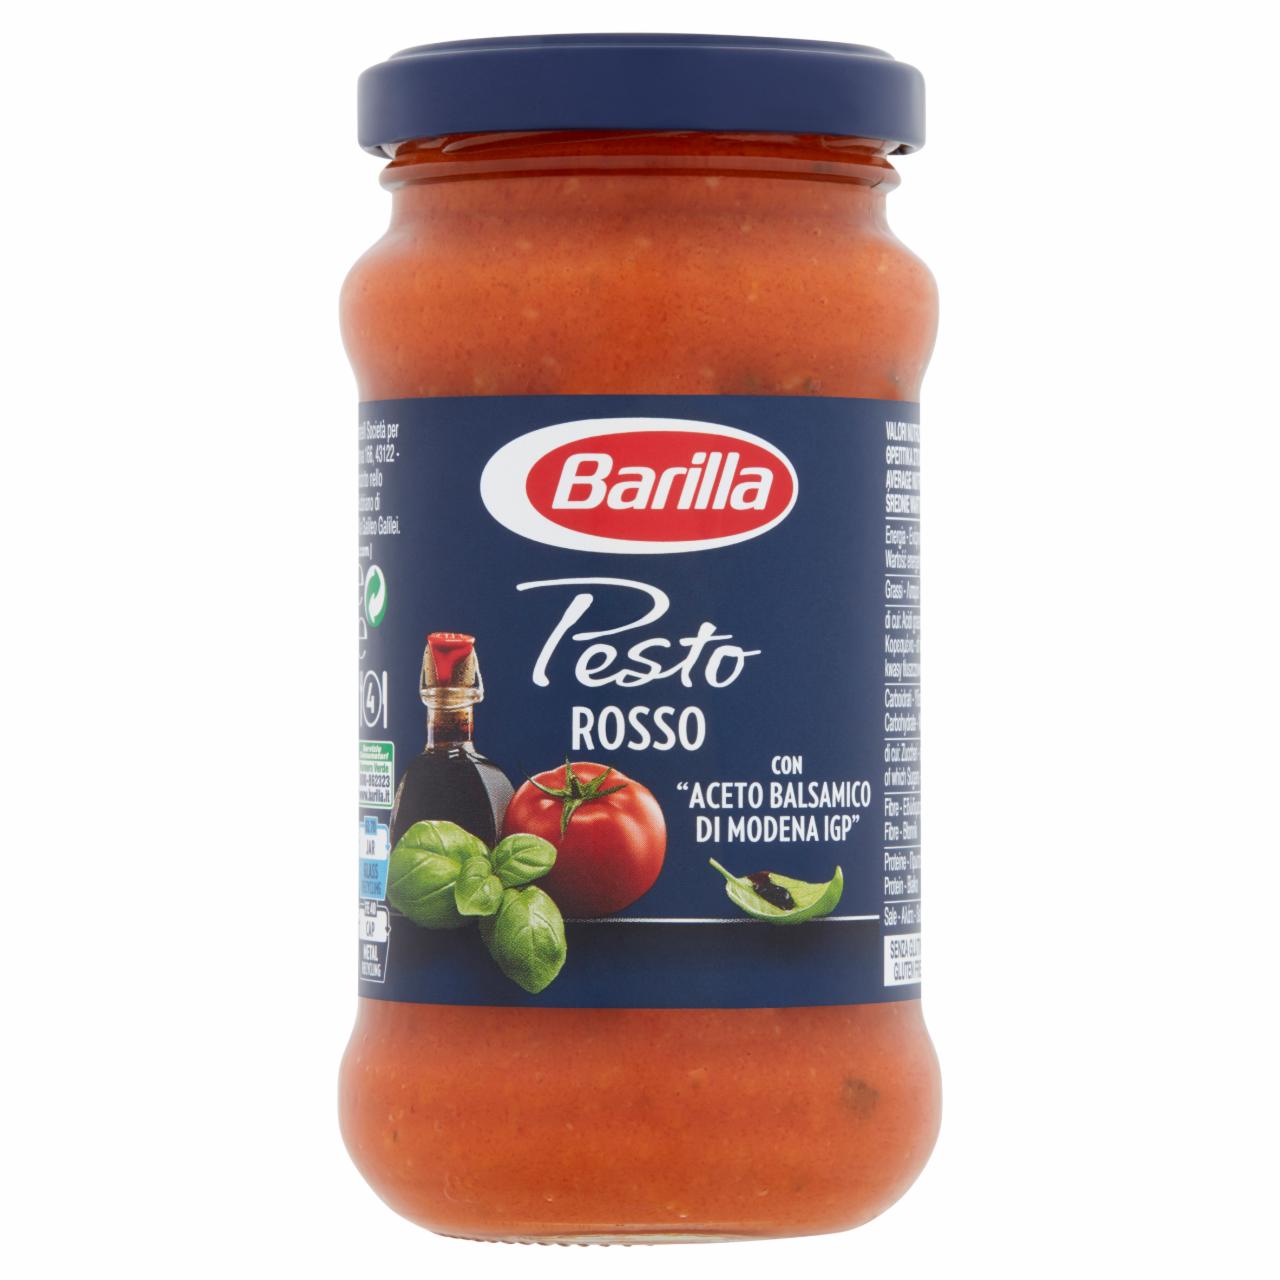 Képek - Barilla Pesto Rosso szósz paradicsommal, bazsalikommal és modenai balzsamecettel 200 g